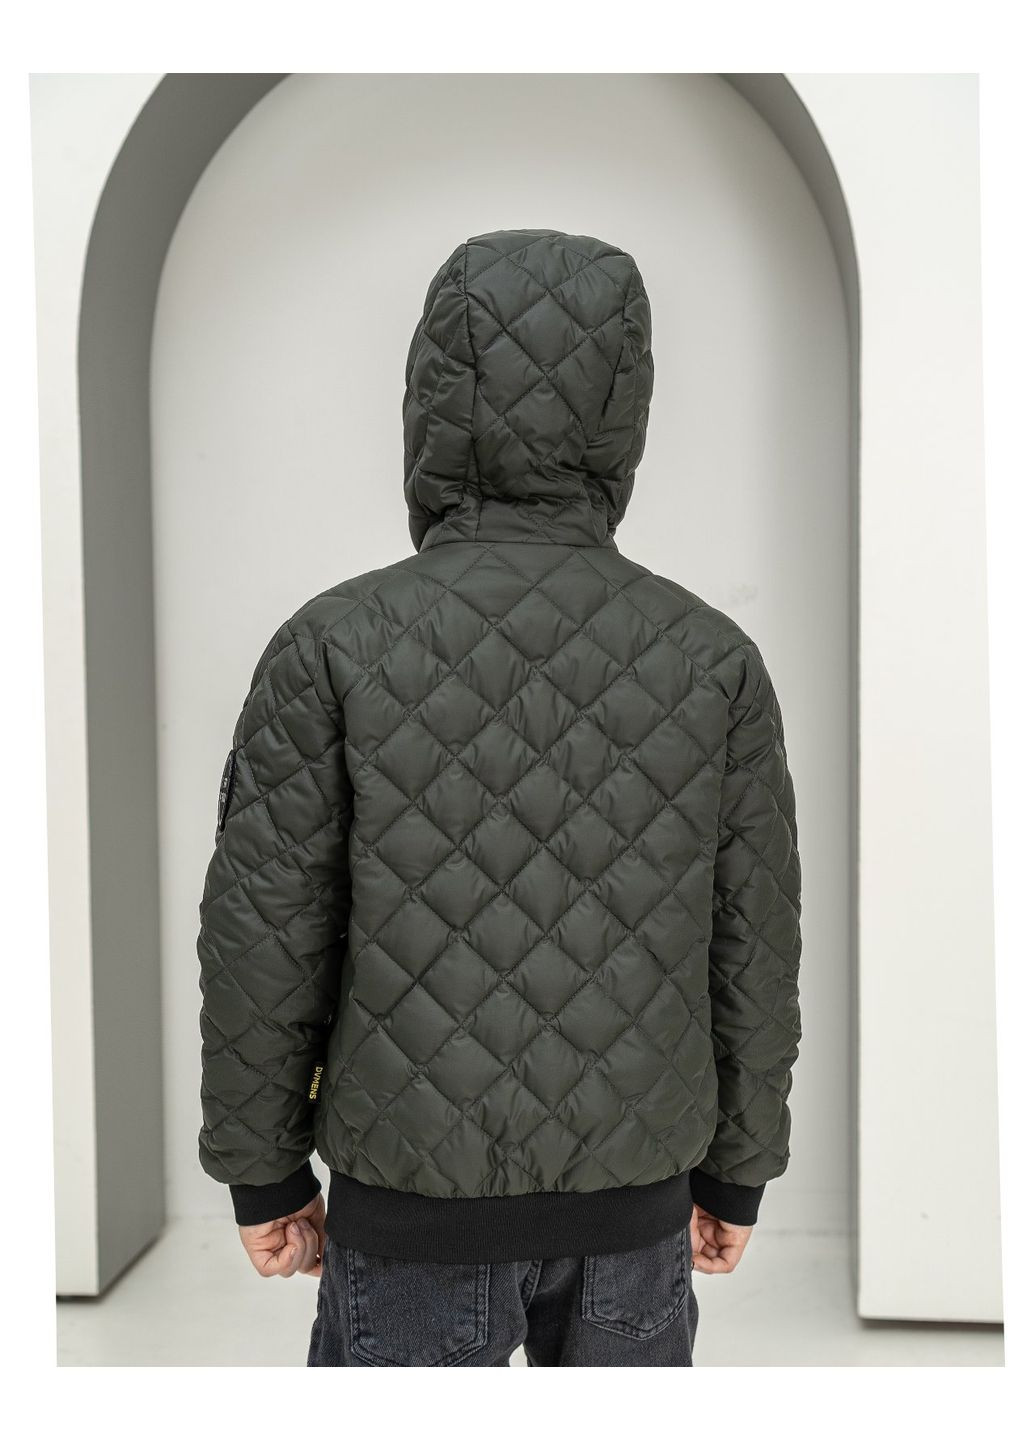 Оливковая (хаки) демисезонная демисезонная куртка для мальчика SK